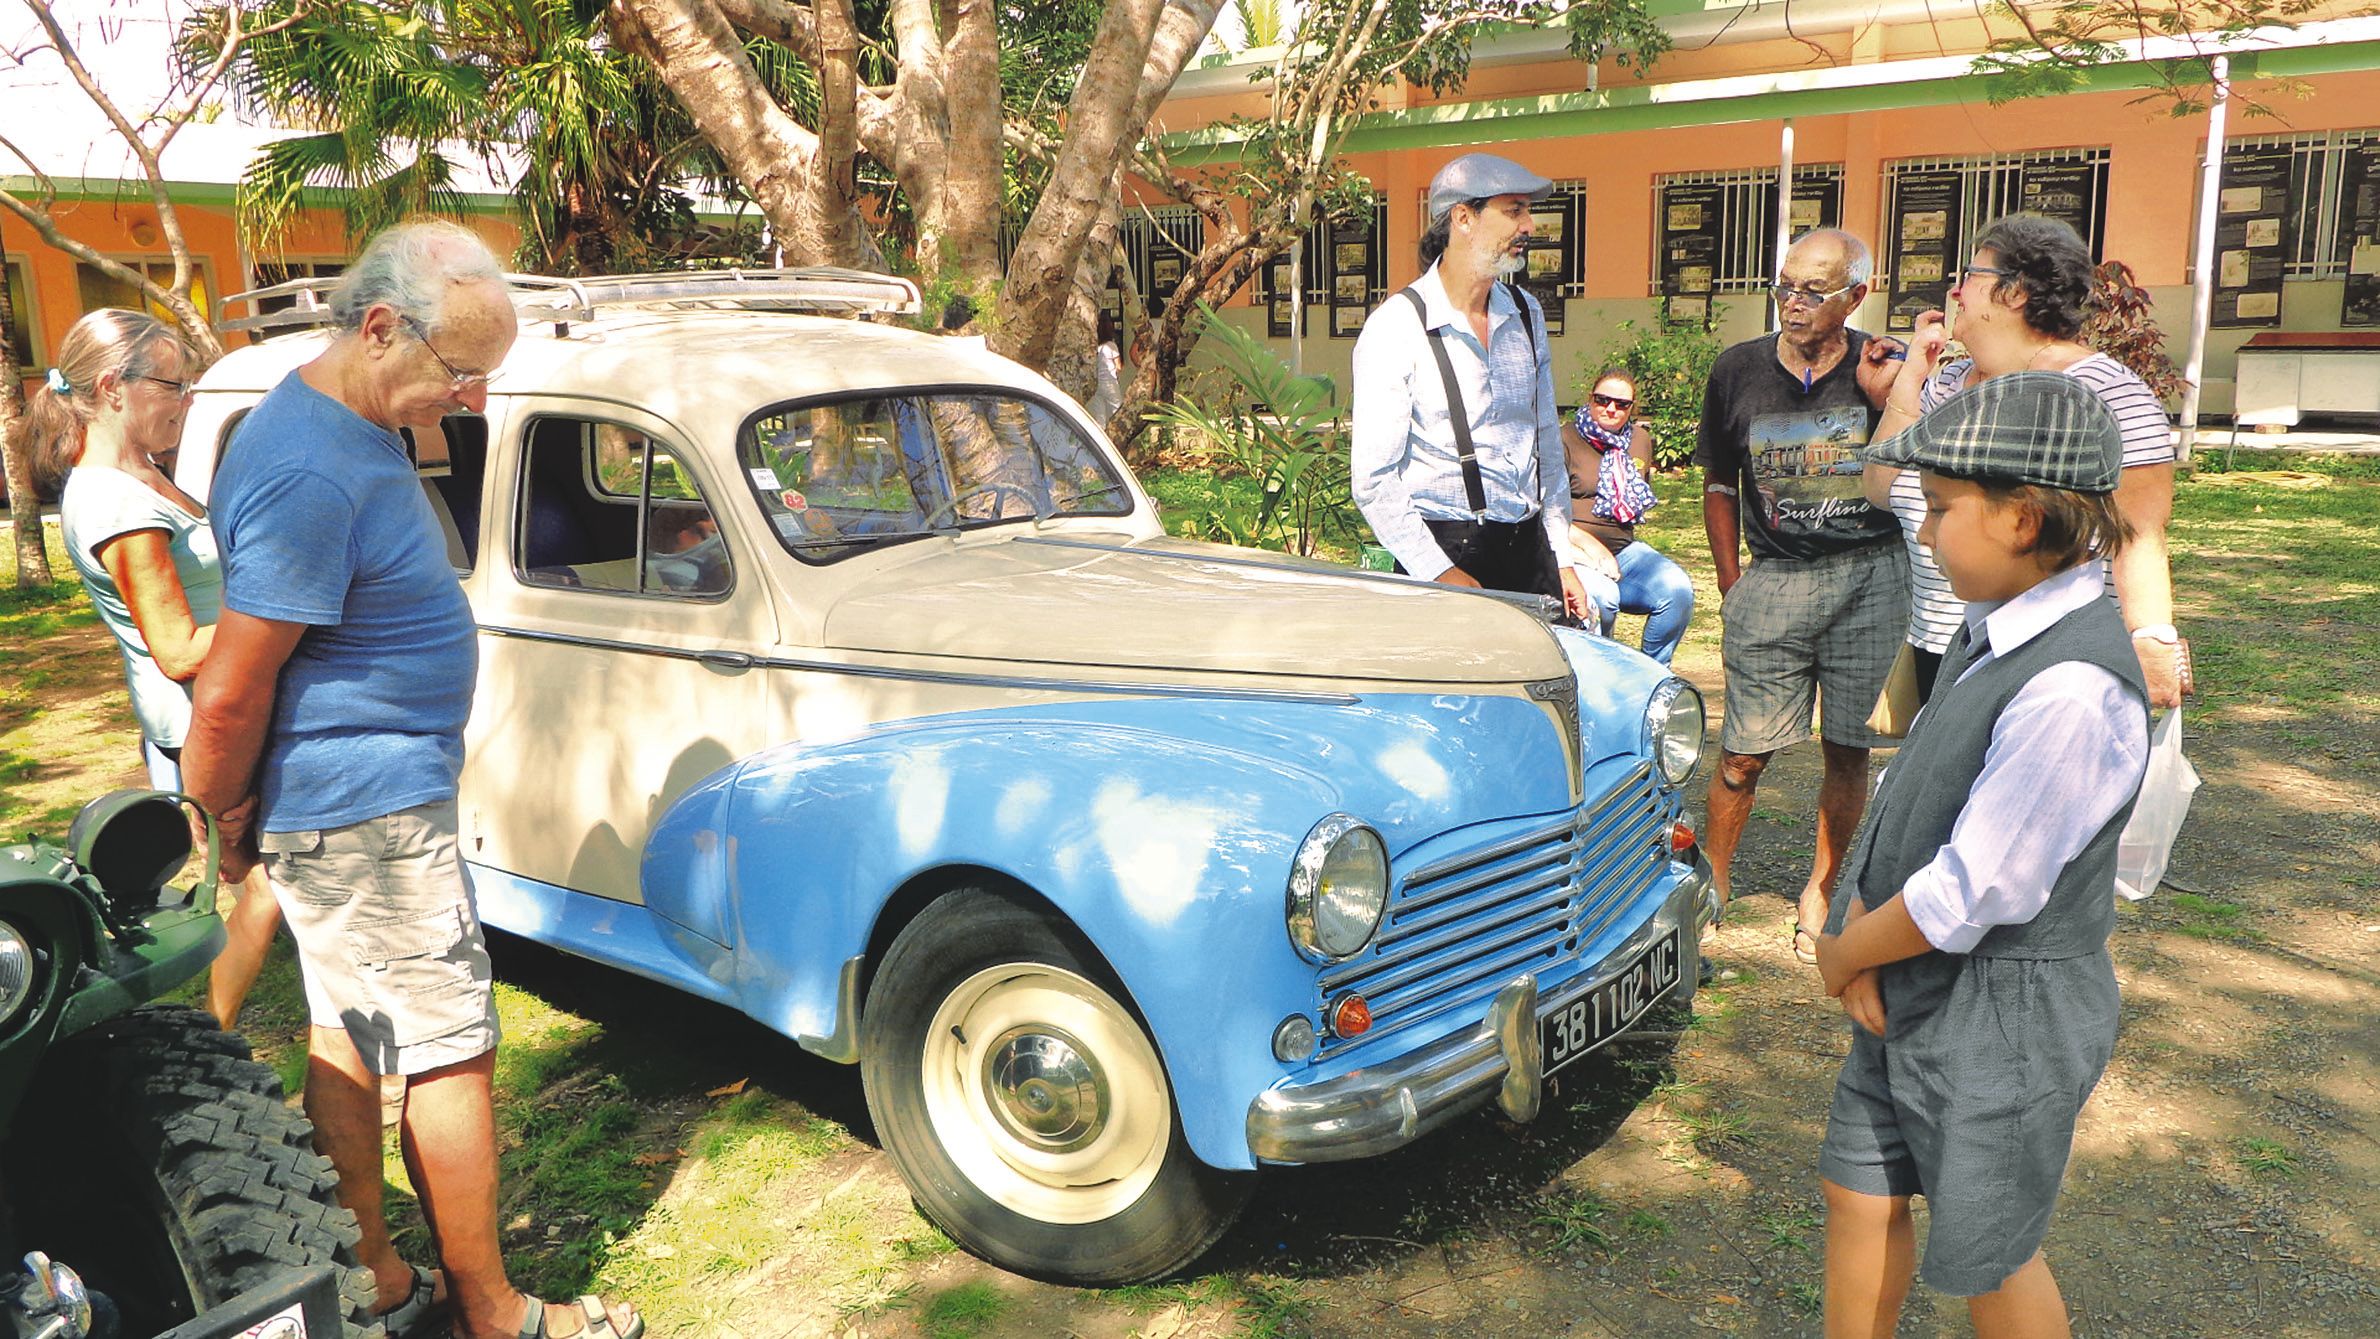 Le public a apprécié de (re)découvrir des voitures anciennes comme cette Peugeot 403 Break de 1953. Certains ont pu bénéficier de balades à travers les rues de la commune.